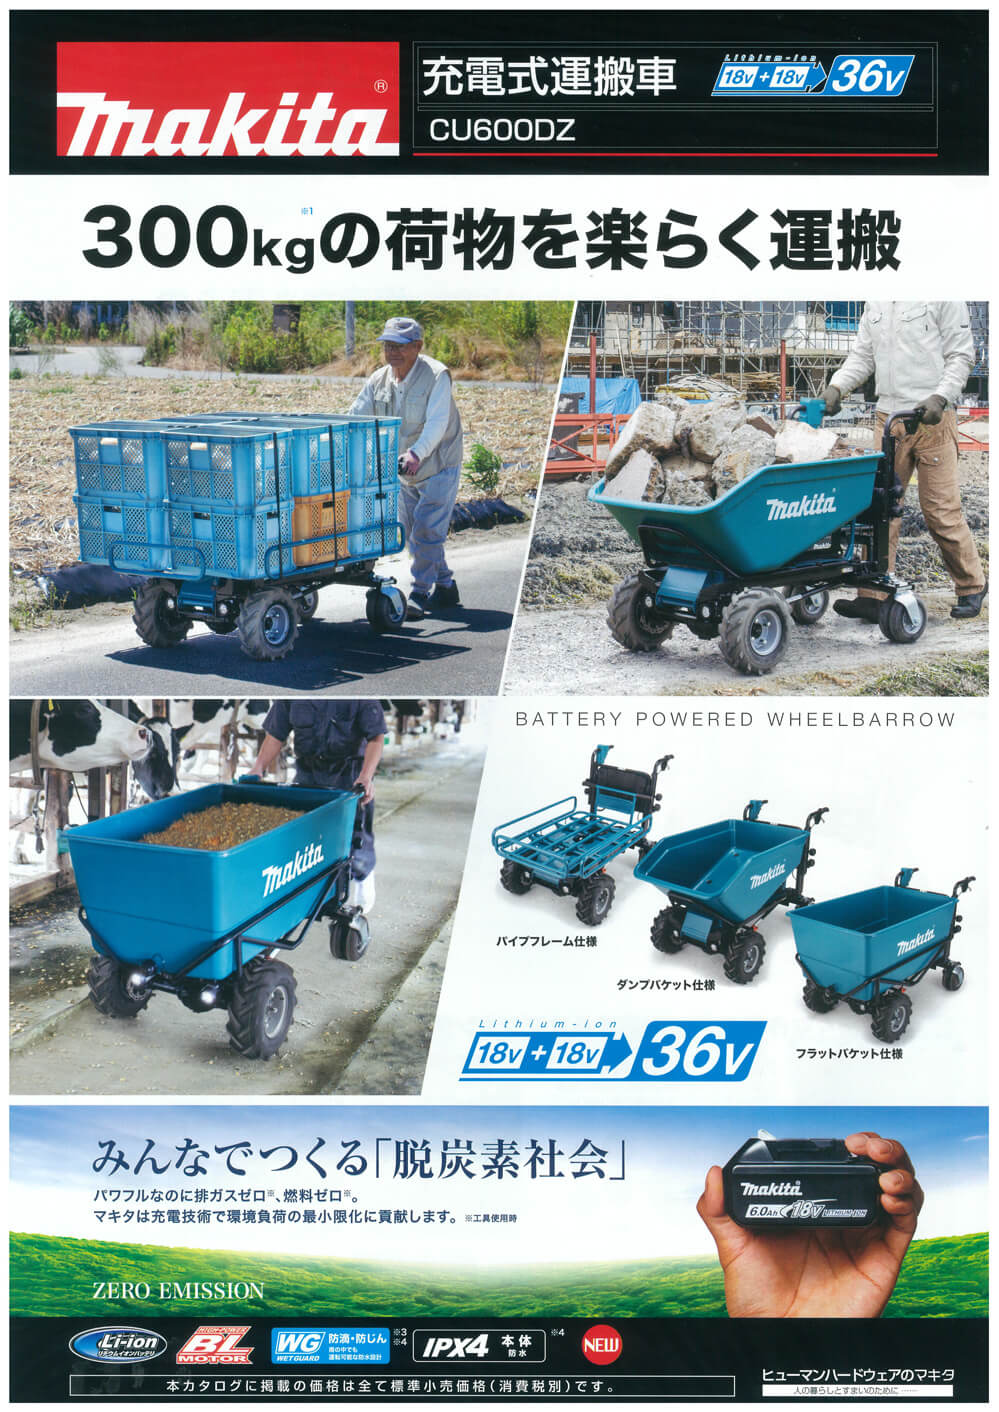 マキタ 充電式運搬車用 パイプフレームセット品A-65470 - 12